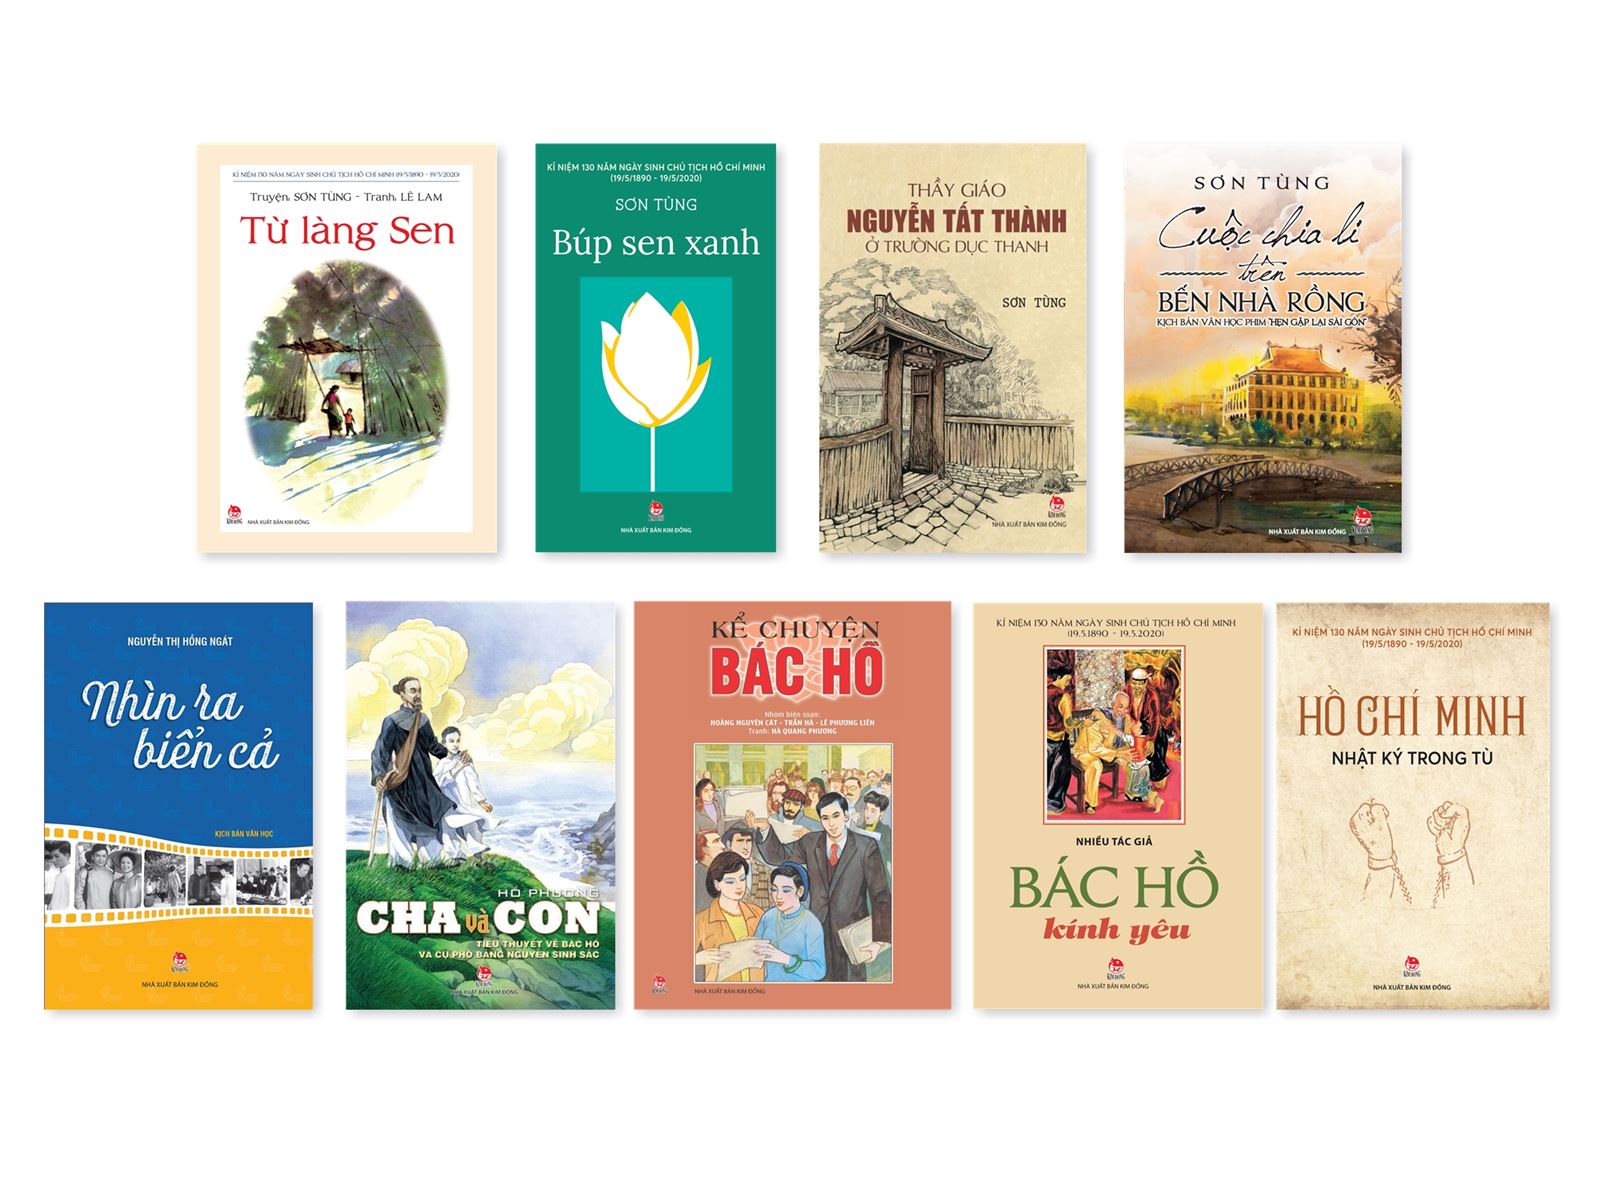 9 ấn phẩm của Nhà Xuát bản Kim Đồng giúp bạn được “đồng hành” cùng Bác Hồ